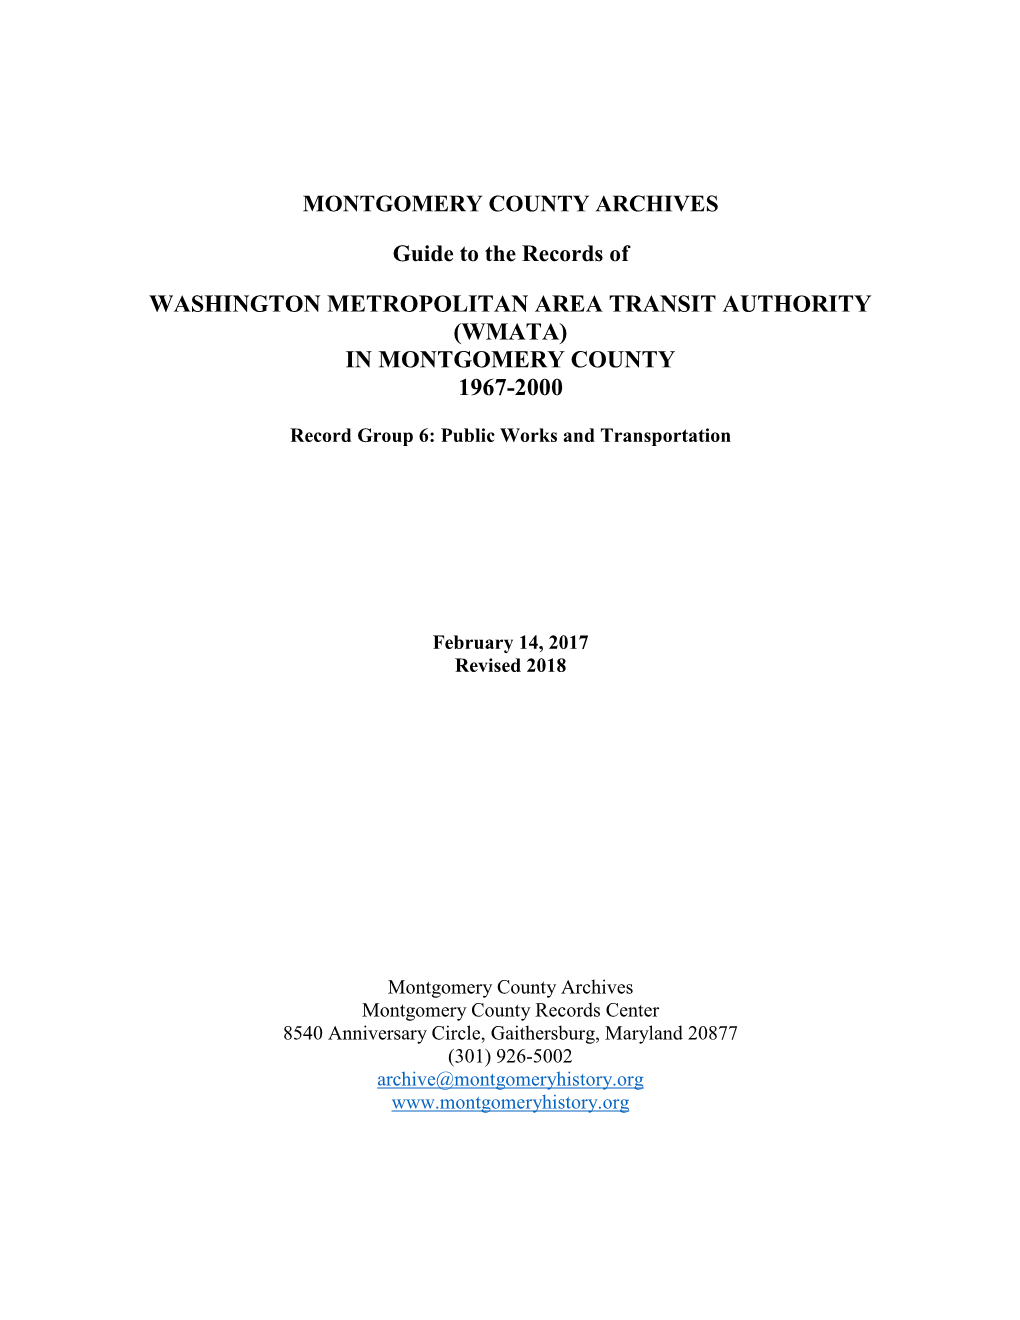 Washington Metropolitan Area Transit Authority (Wmata) in Montgomery County 1967-2000